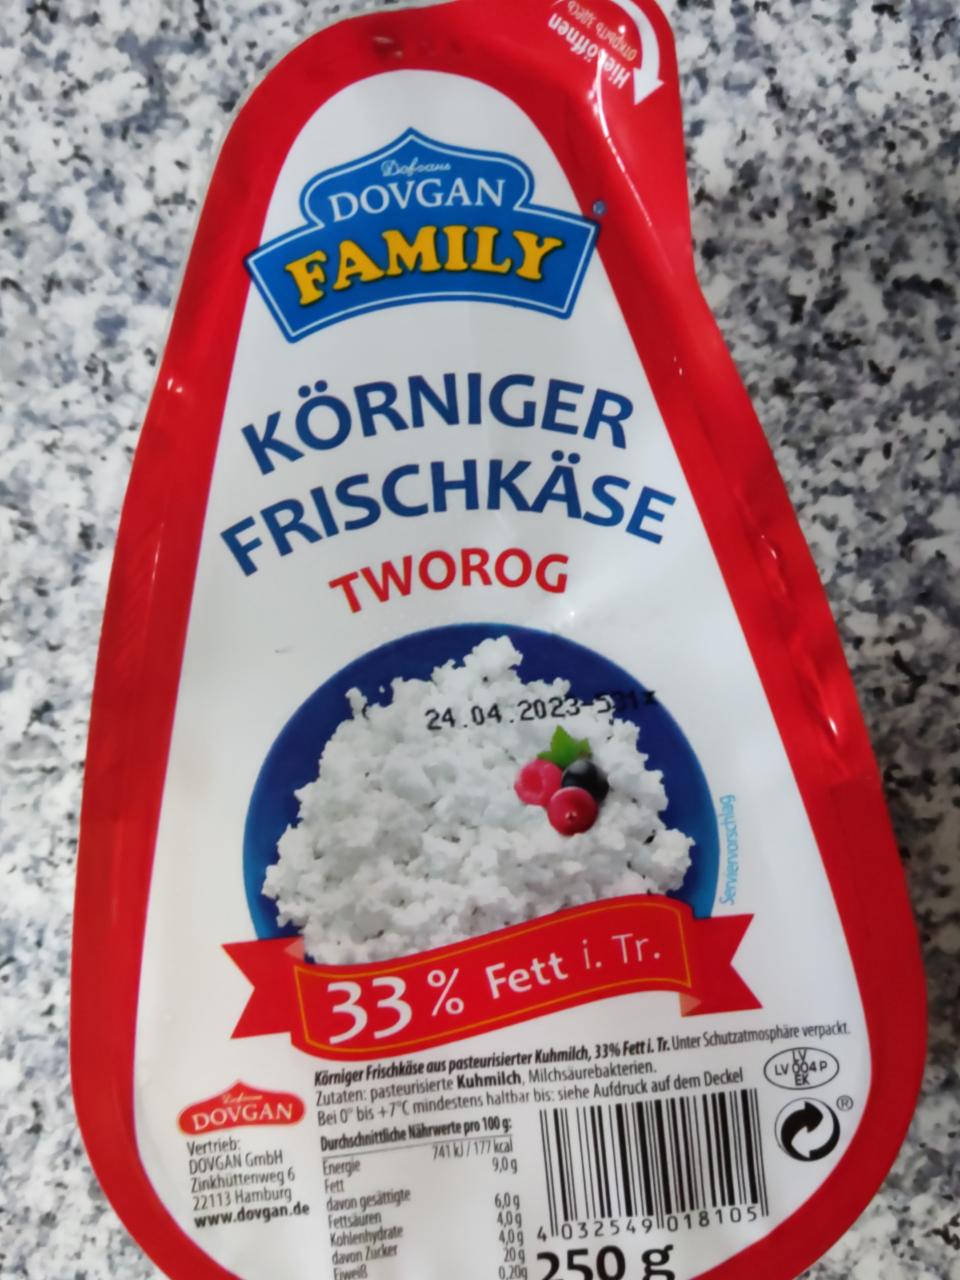 Körniger Frischkäse 33% Fett Dovgan Family - kalorie, kJ i wartości ...